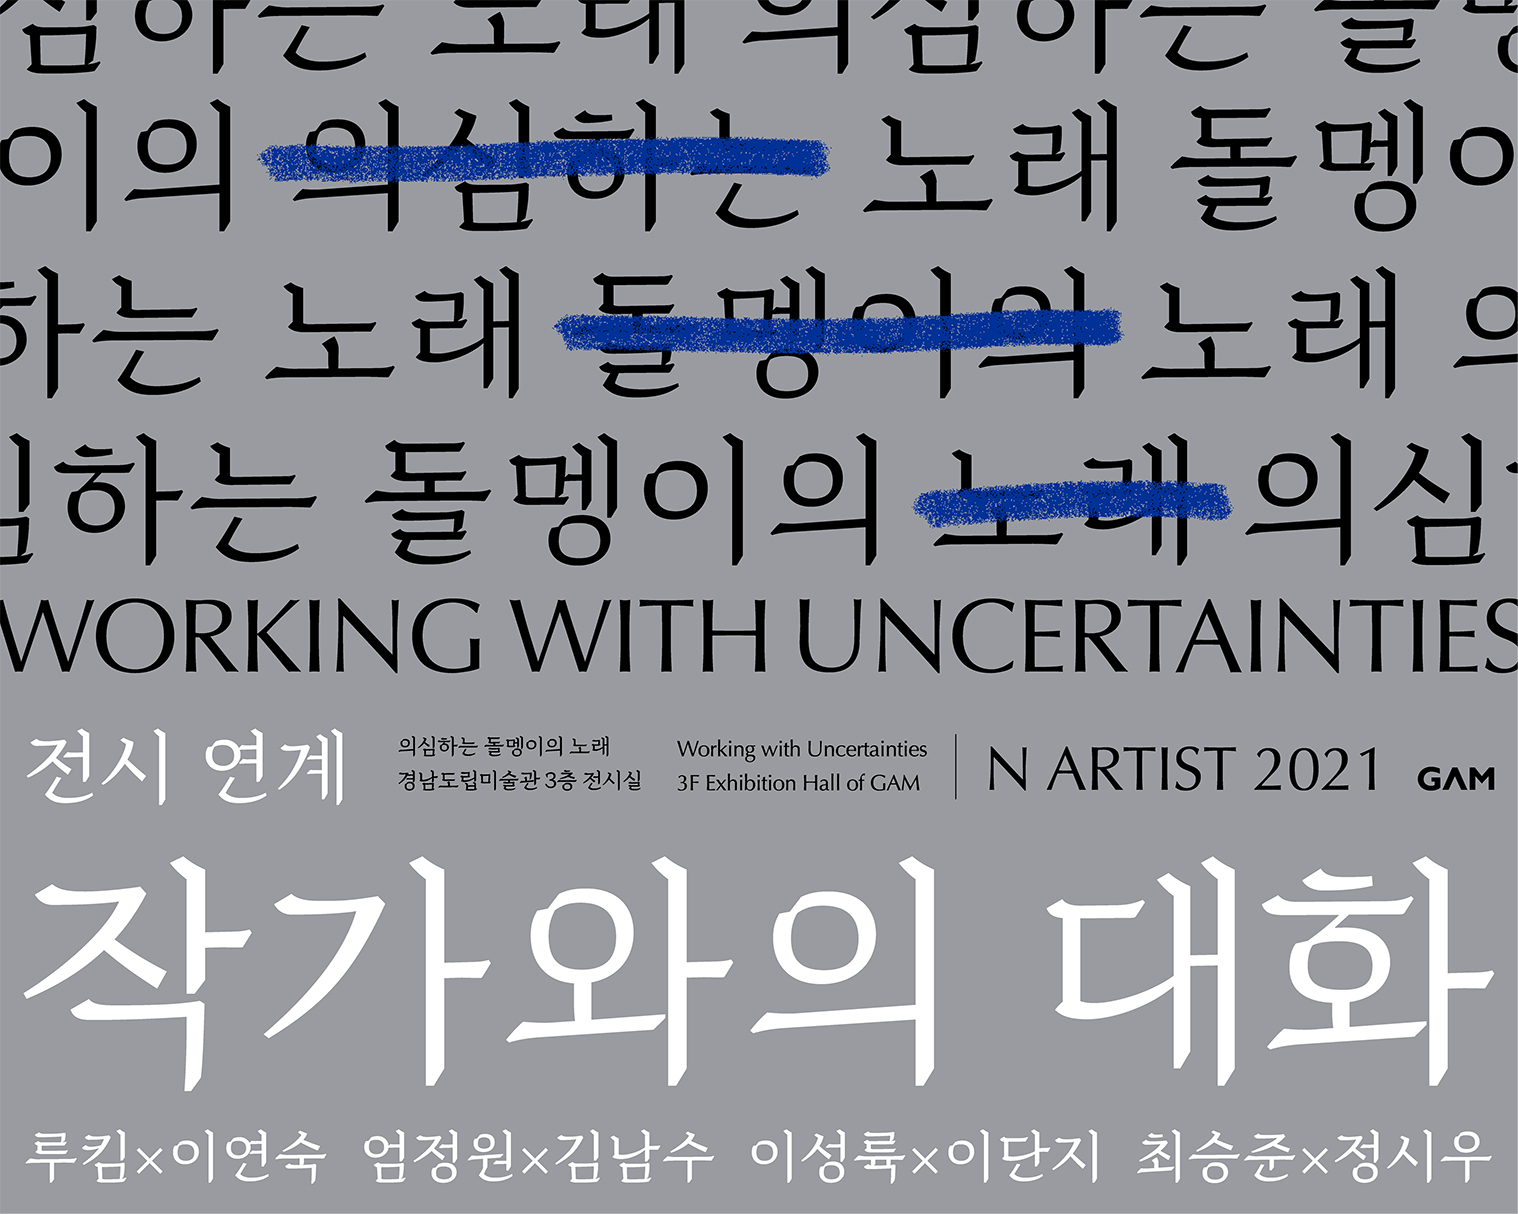 《N ARTIST 2021：의심하는 돌멩이의 노래》 전시연계 작가와의 대화